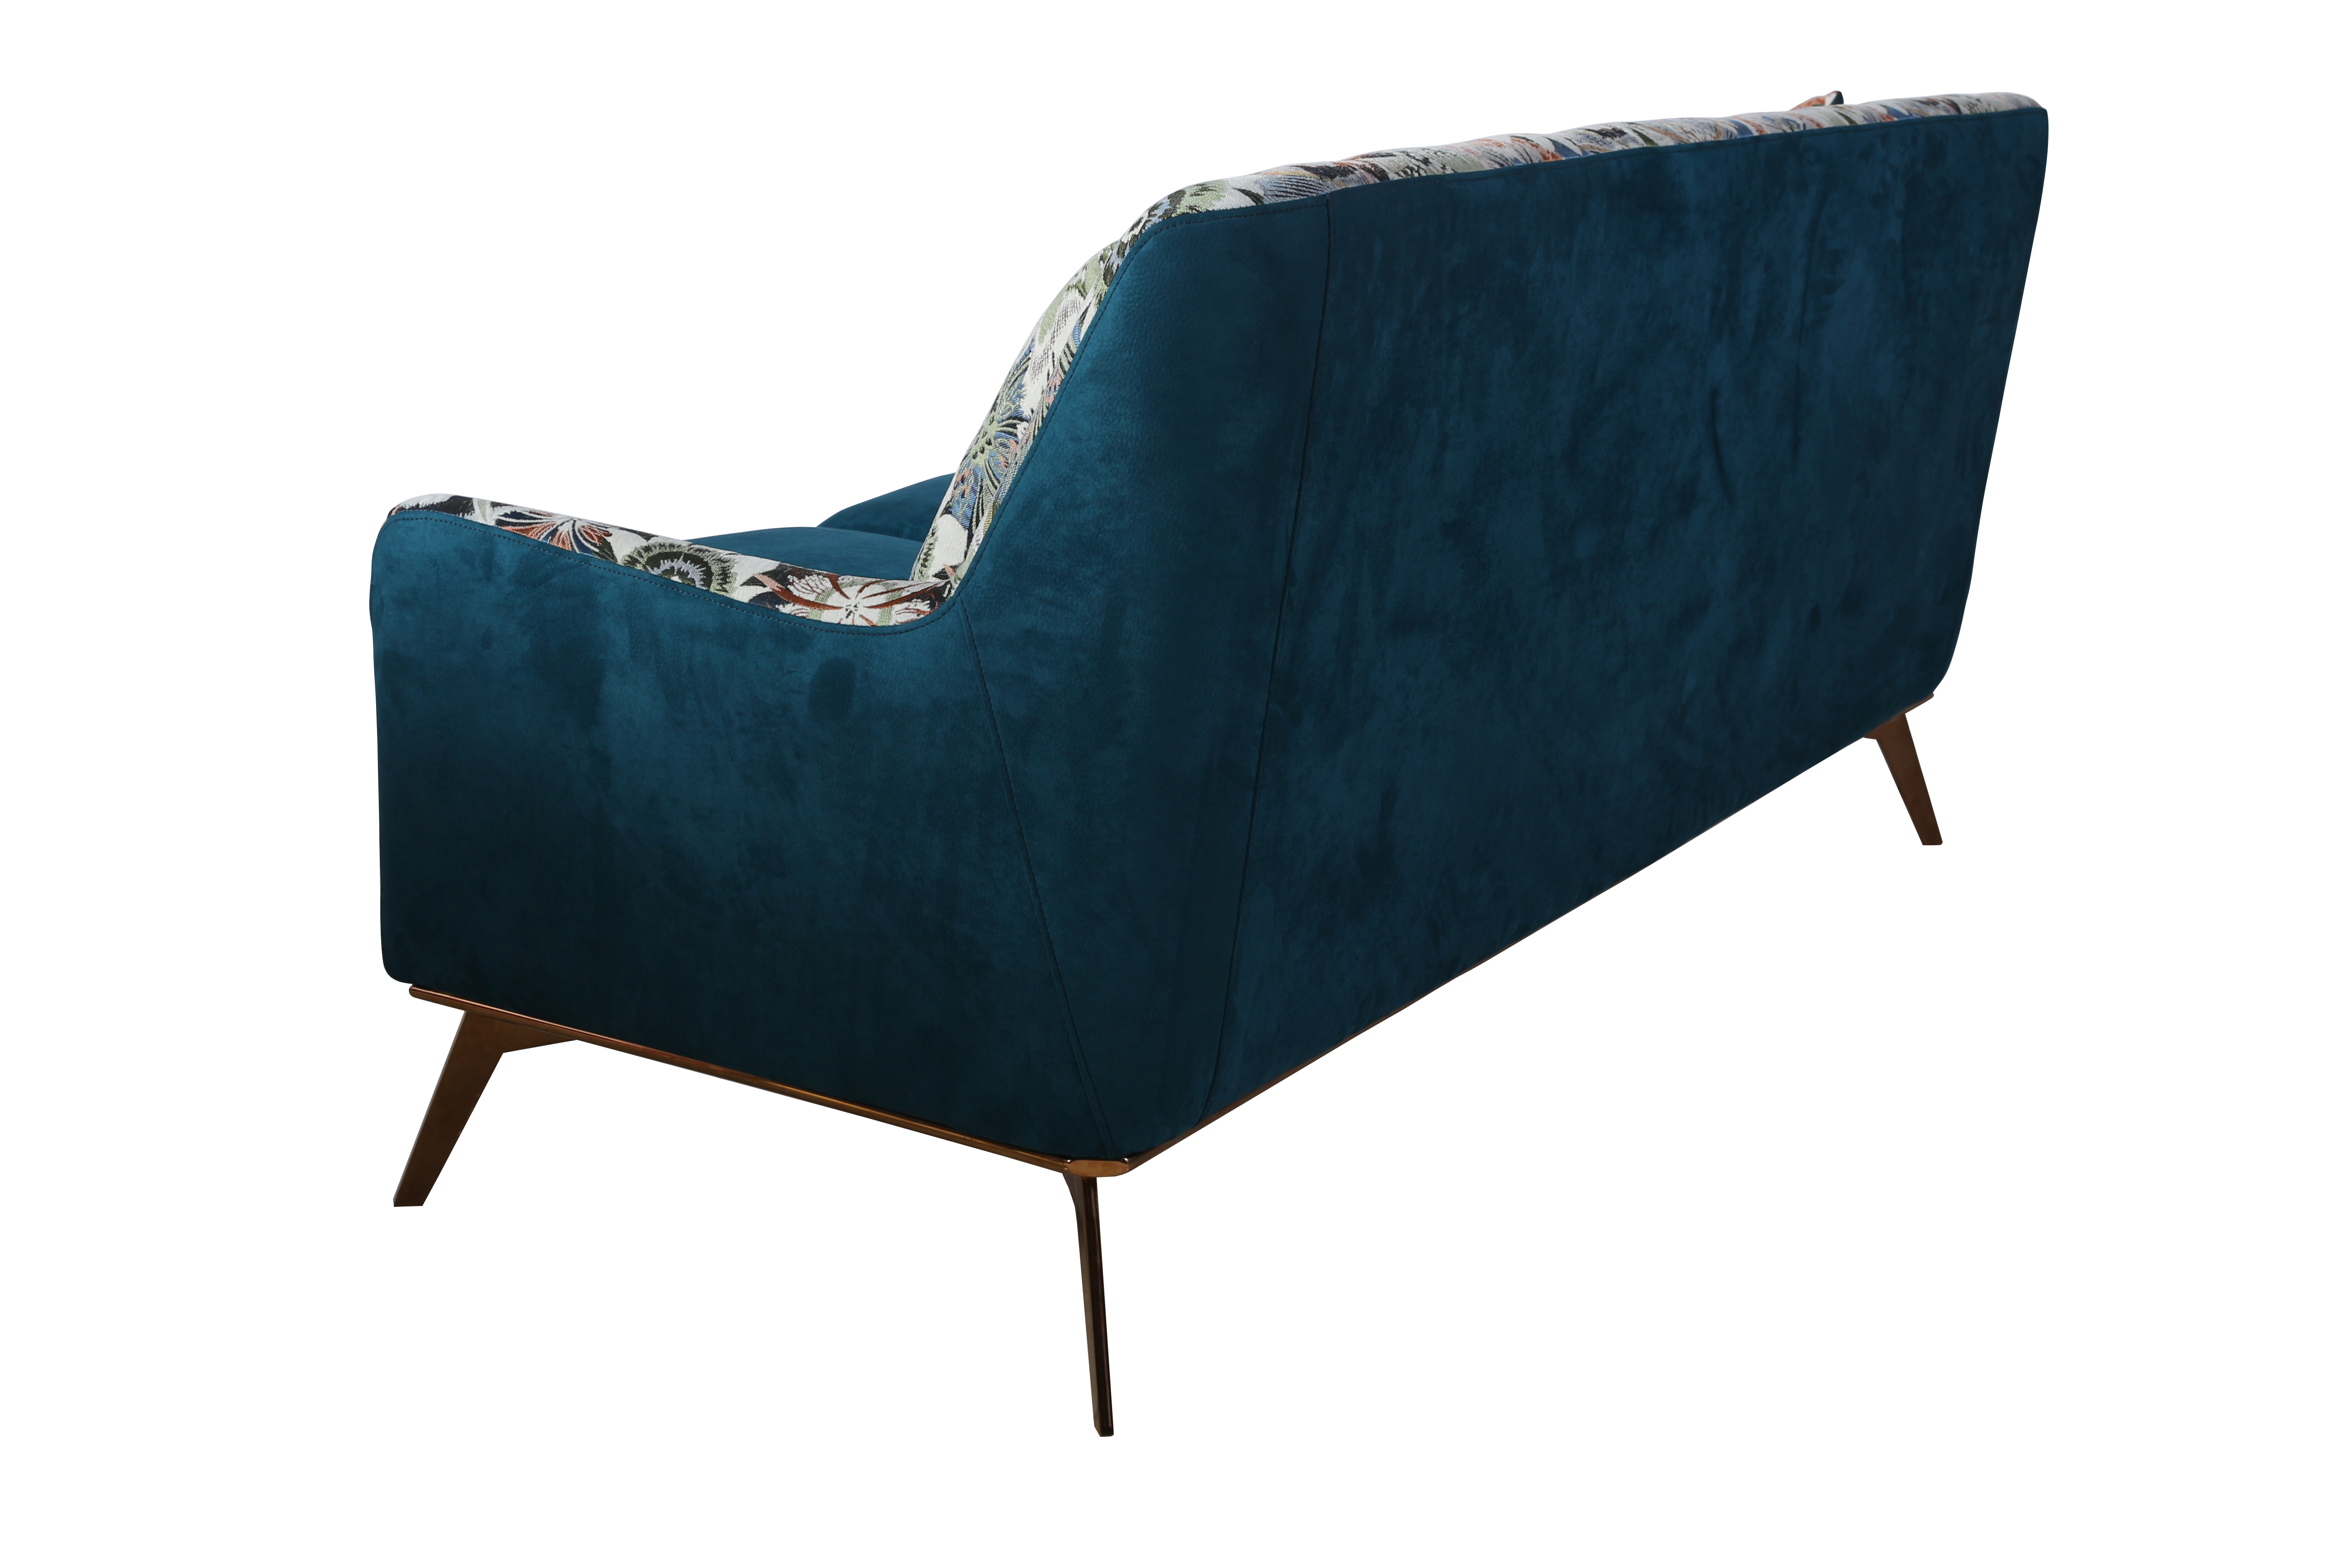 Tengye TENGYE new modern light luxury designer sofa stainless steel living room fabric sofa SF-819